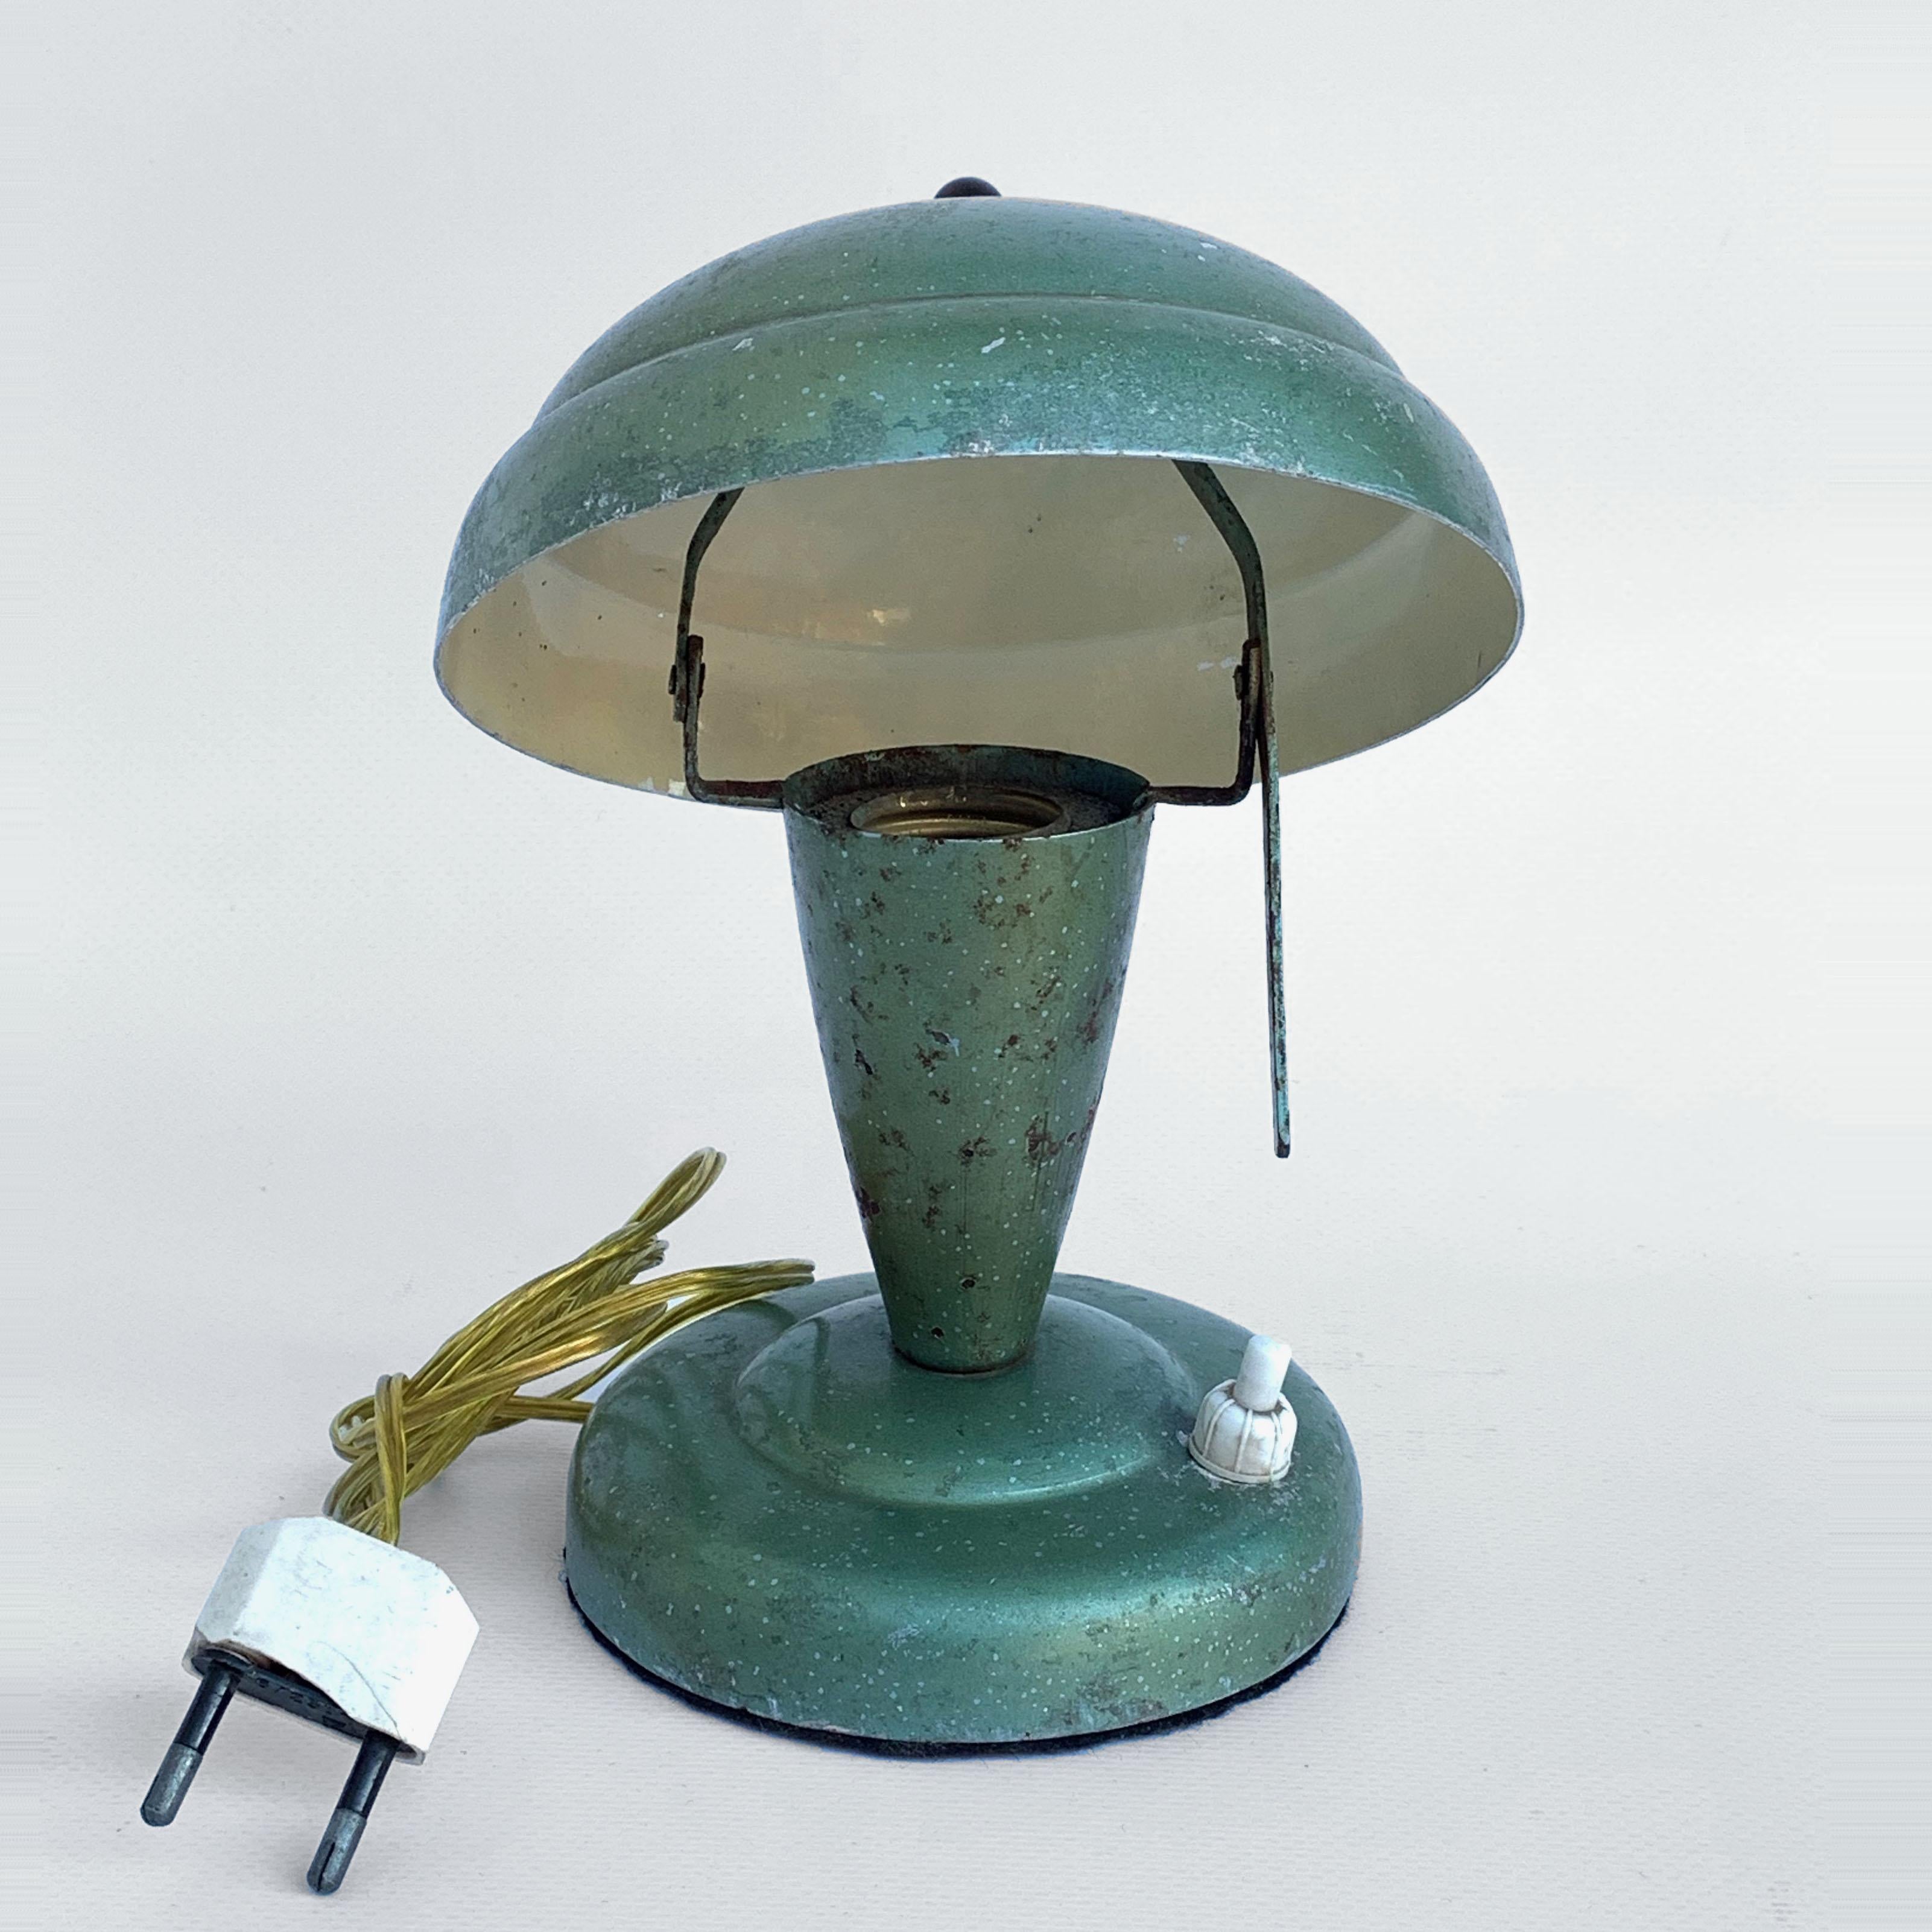 Bezaubernde Art Deco Nachttischlampe, vermutlich von Fog & Mørup in Dänemark hergestellt. Sockel und Lampenschirm aus grün lackiertem Metall. Der Schatten kann auf beiden Seiten der Mitte gekippt werden. Aufgeladen, aber die originalen Fassungen der